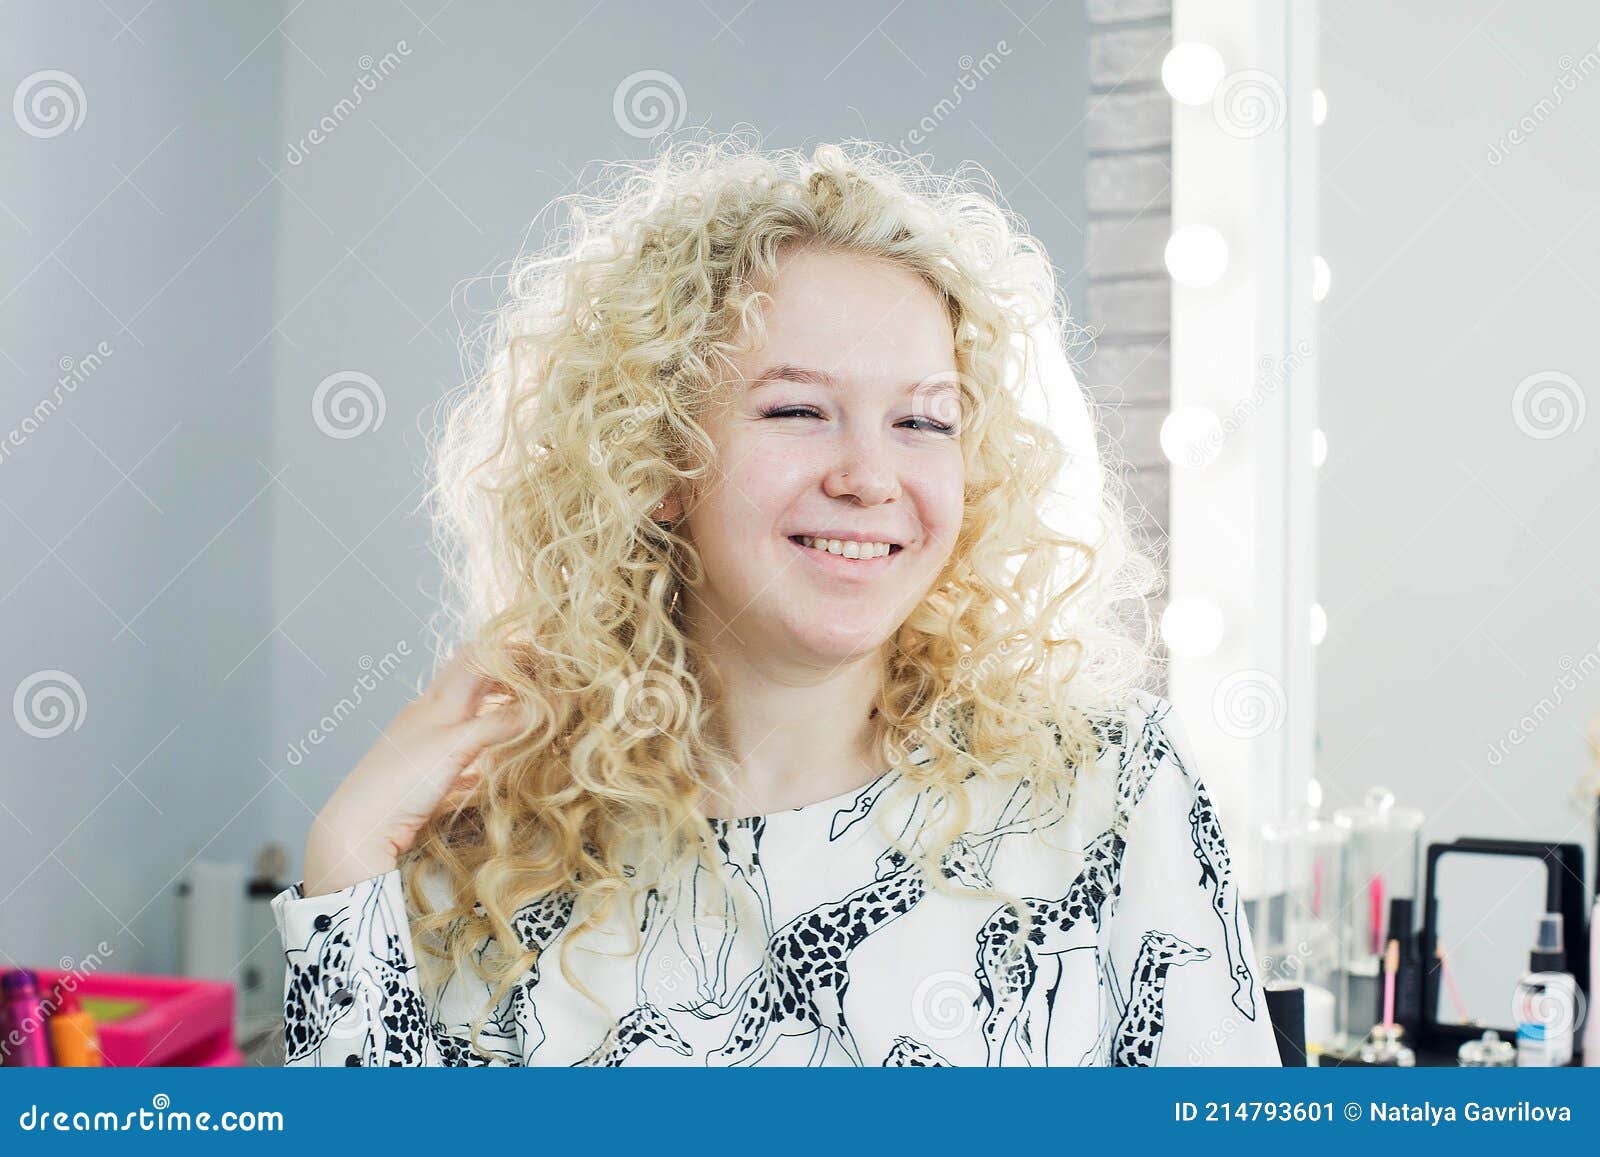 Blonde Hair Beauty Salon - wide 8